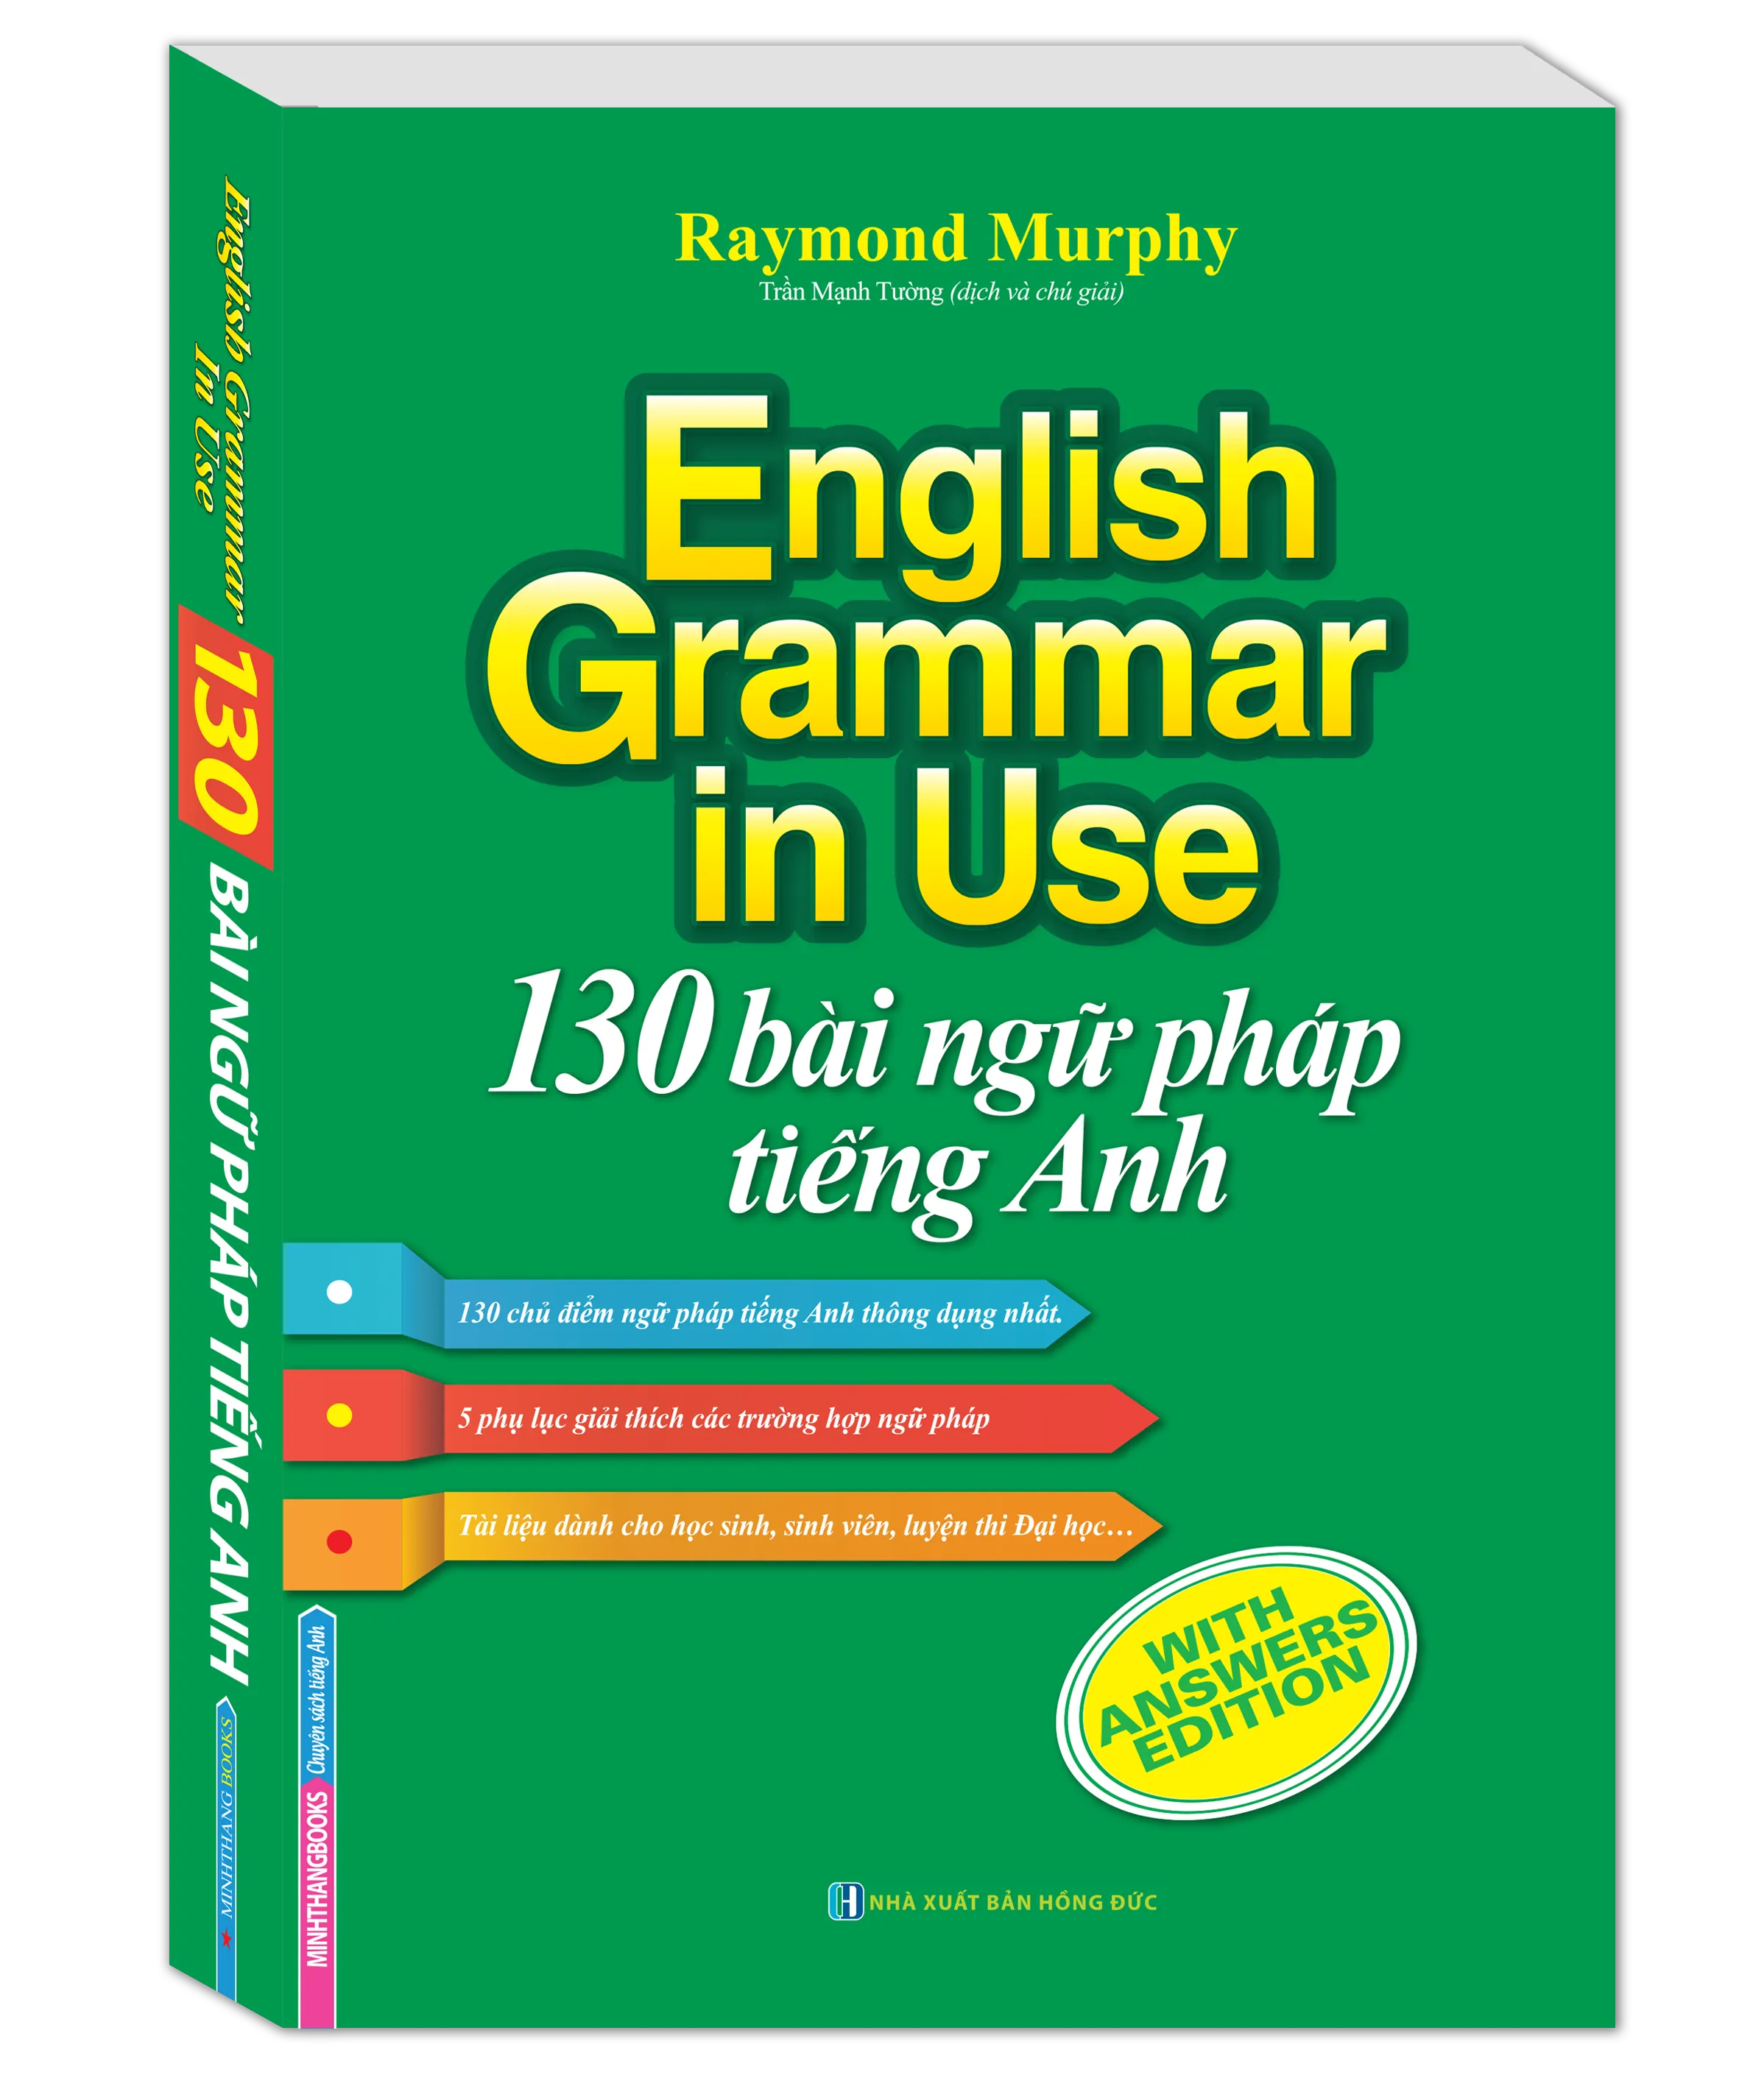 English Grammar in use - 130 bài ngữ pháp tiếng Anh (bản màu)